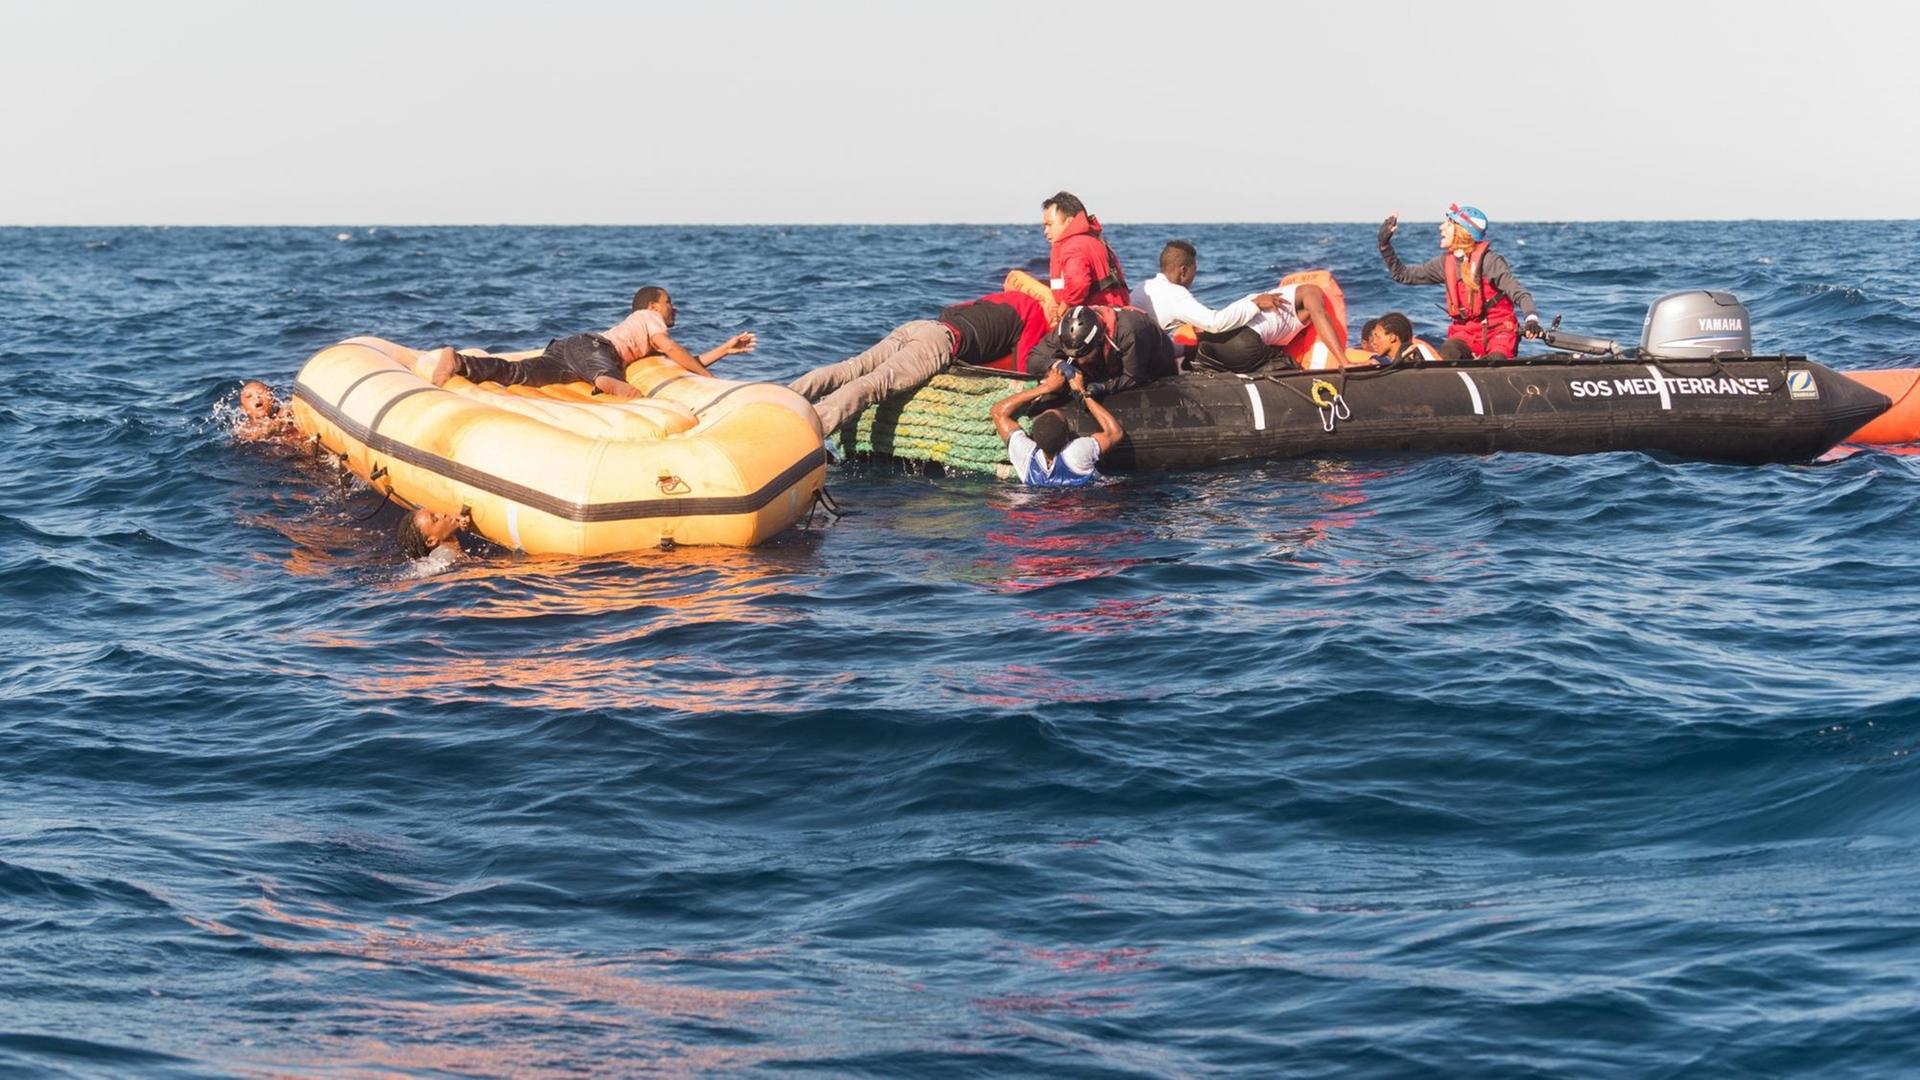 Such- und Rettungsmission im Mittelmeer vor der libyschen Küste am 27. Januar 2018. Zu sehen sind zwei Schlauchboote mit Menschen an Bord.